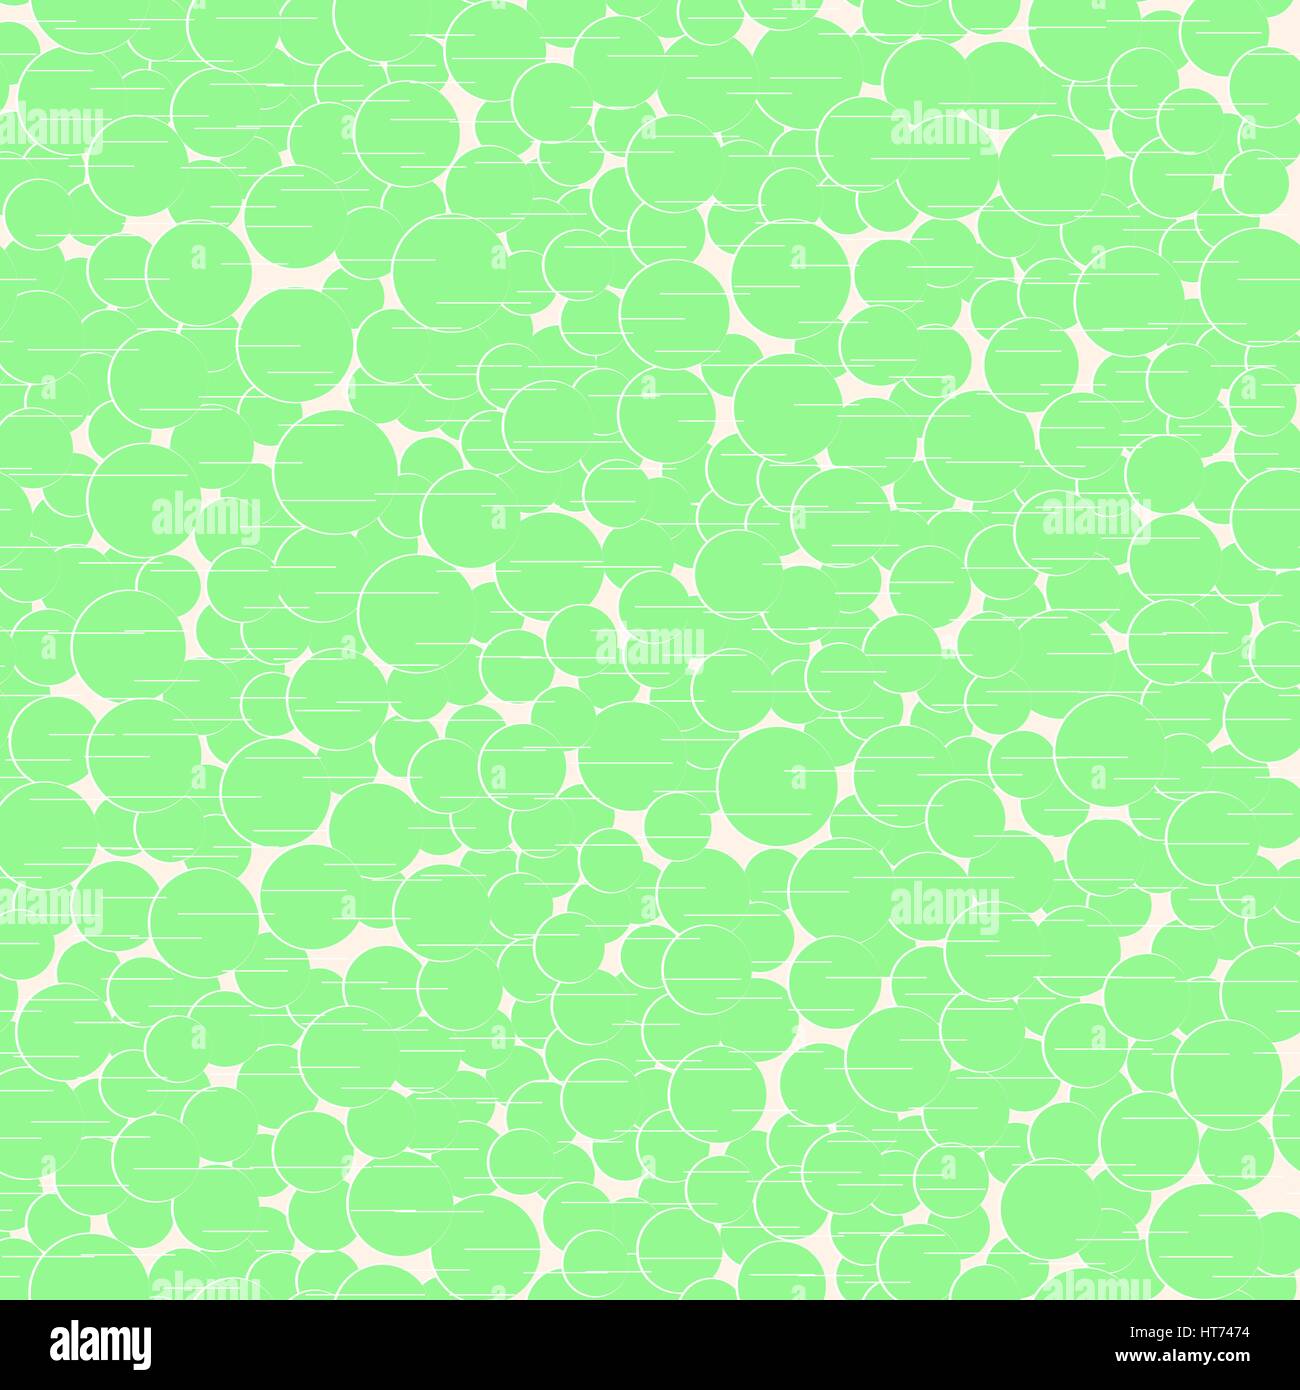 Grüne Kreise mit kurzen Linien abstrakt Musterdesign. Vektor-Illustration. Dekorative Scrapbook Vorlage. Stock Vektor